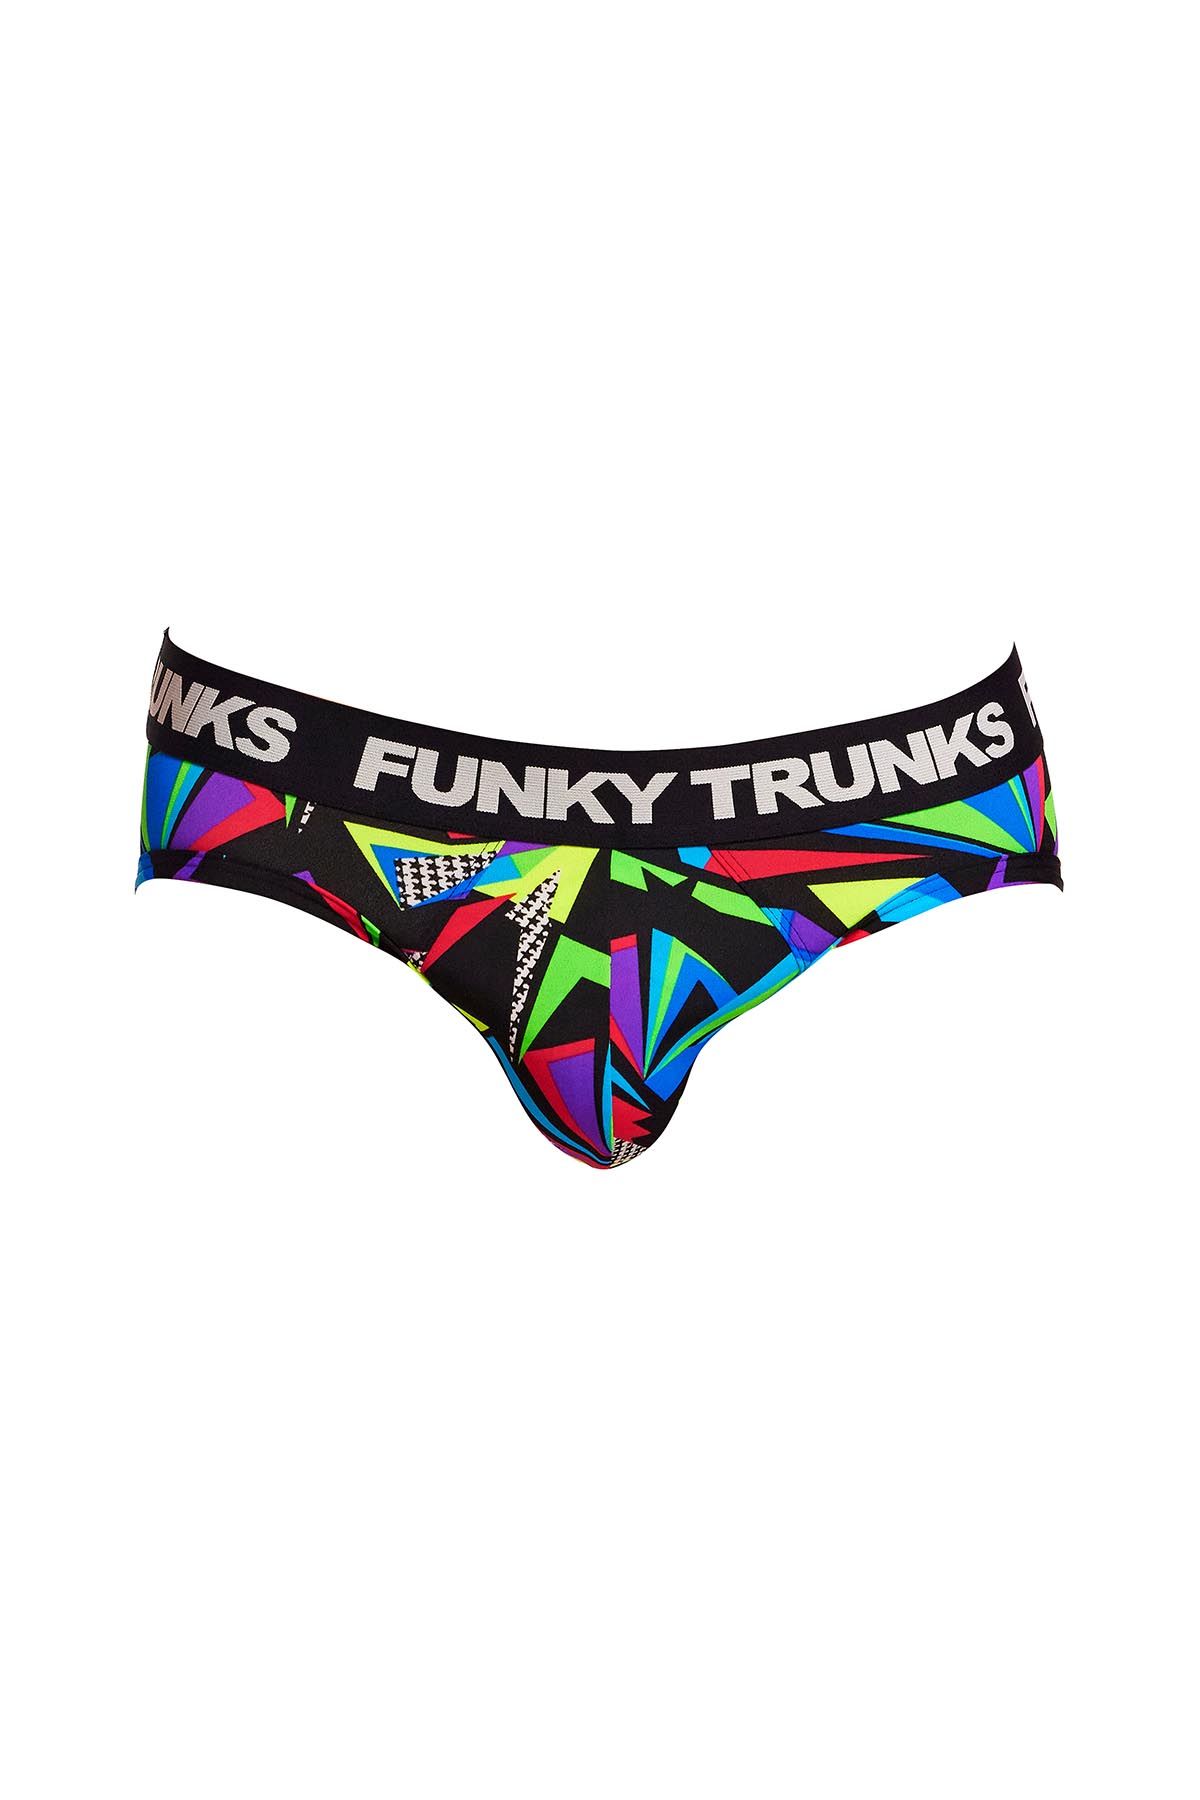 Funky Trunks Underwear Briefs, Beat It, FT56M71611